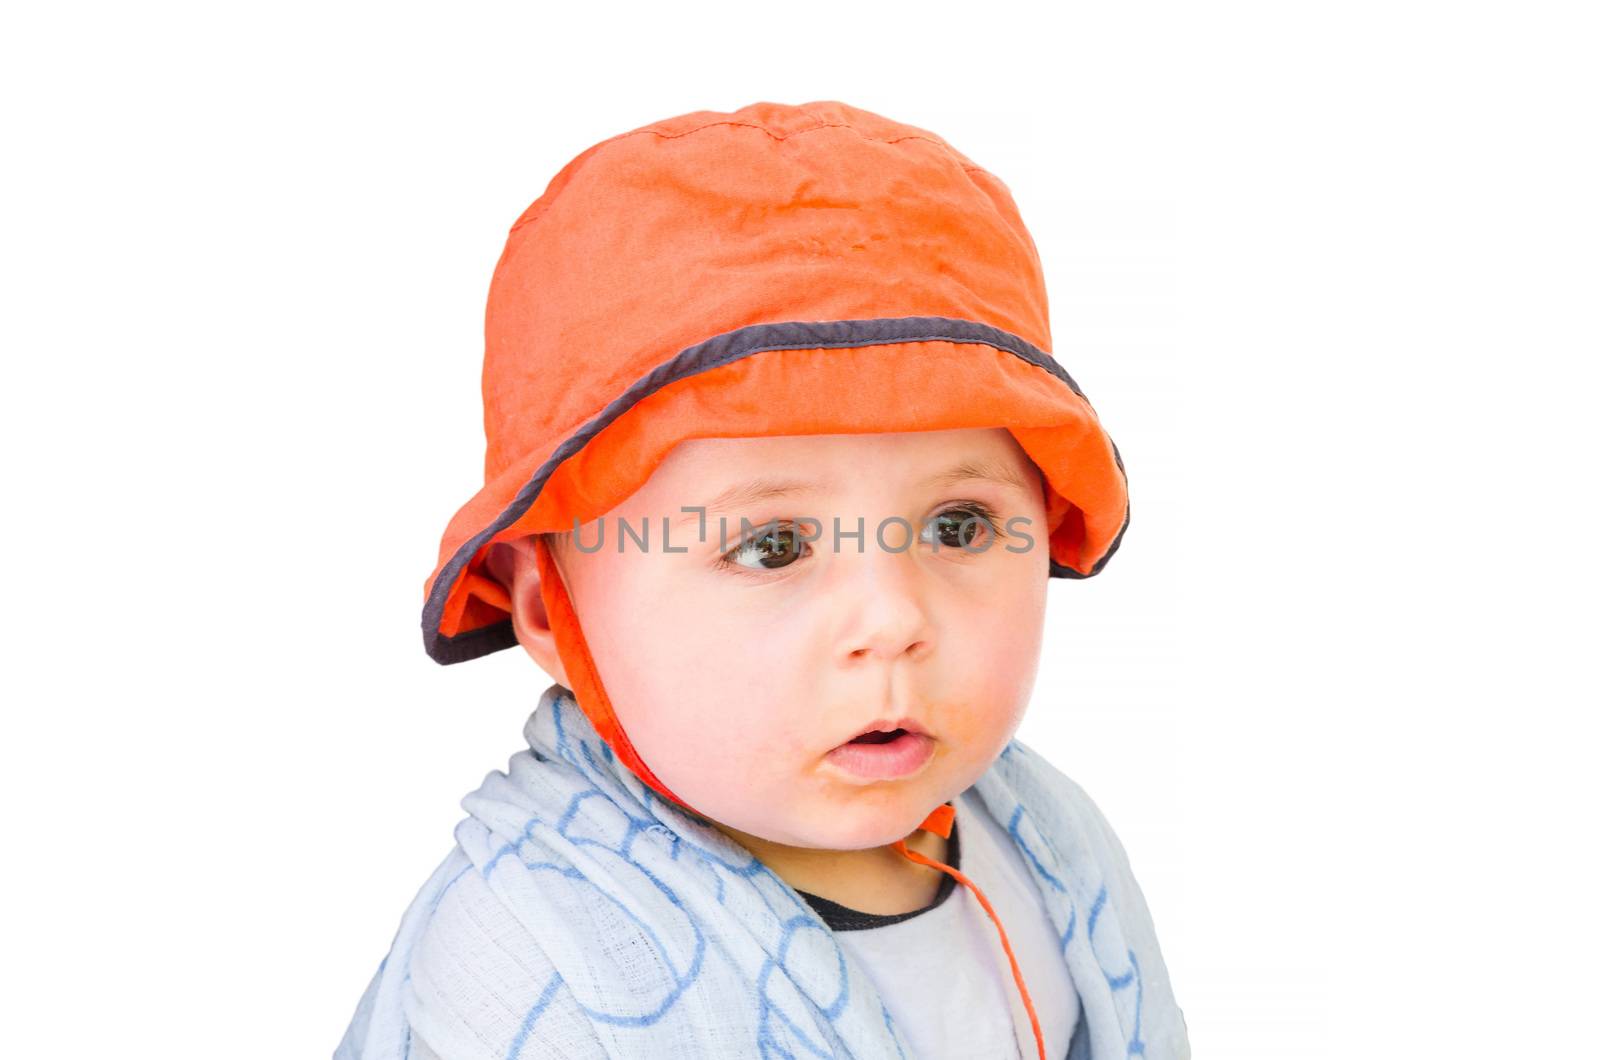 Baby with orange cap looking amazed. Background isolated.